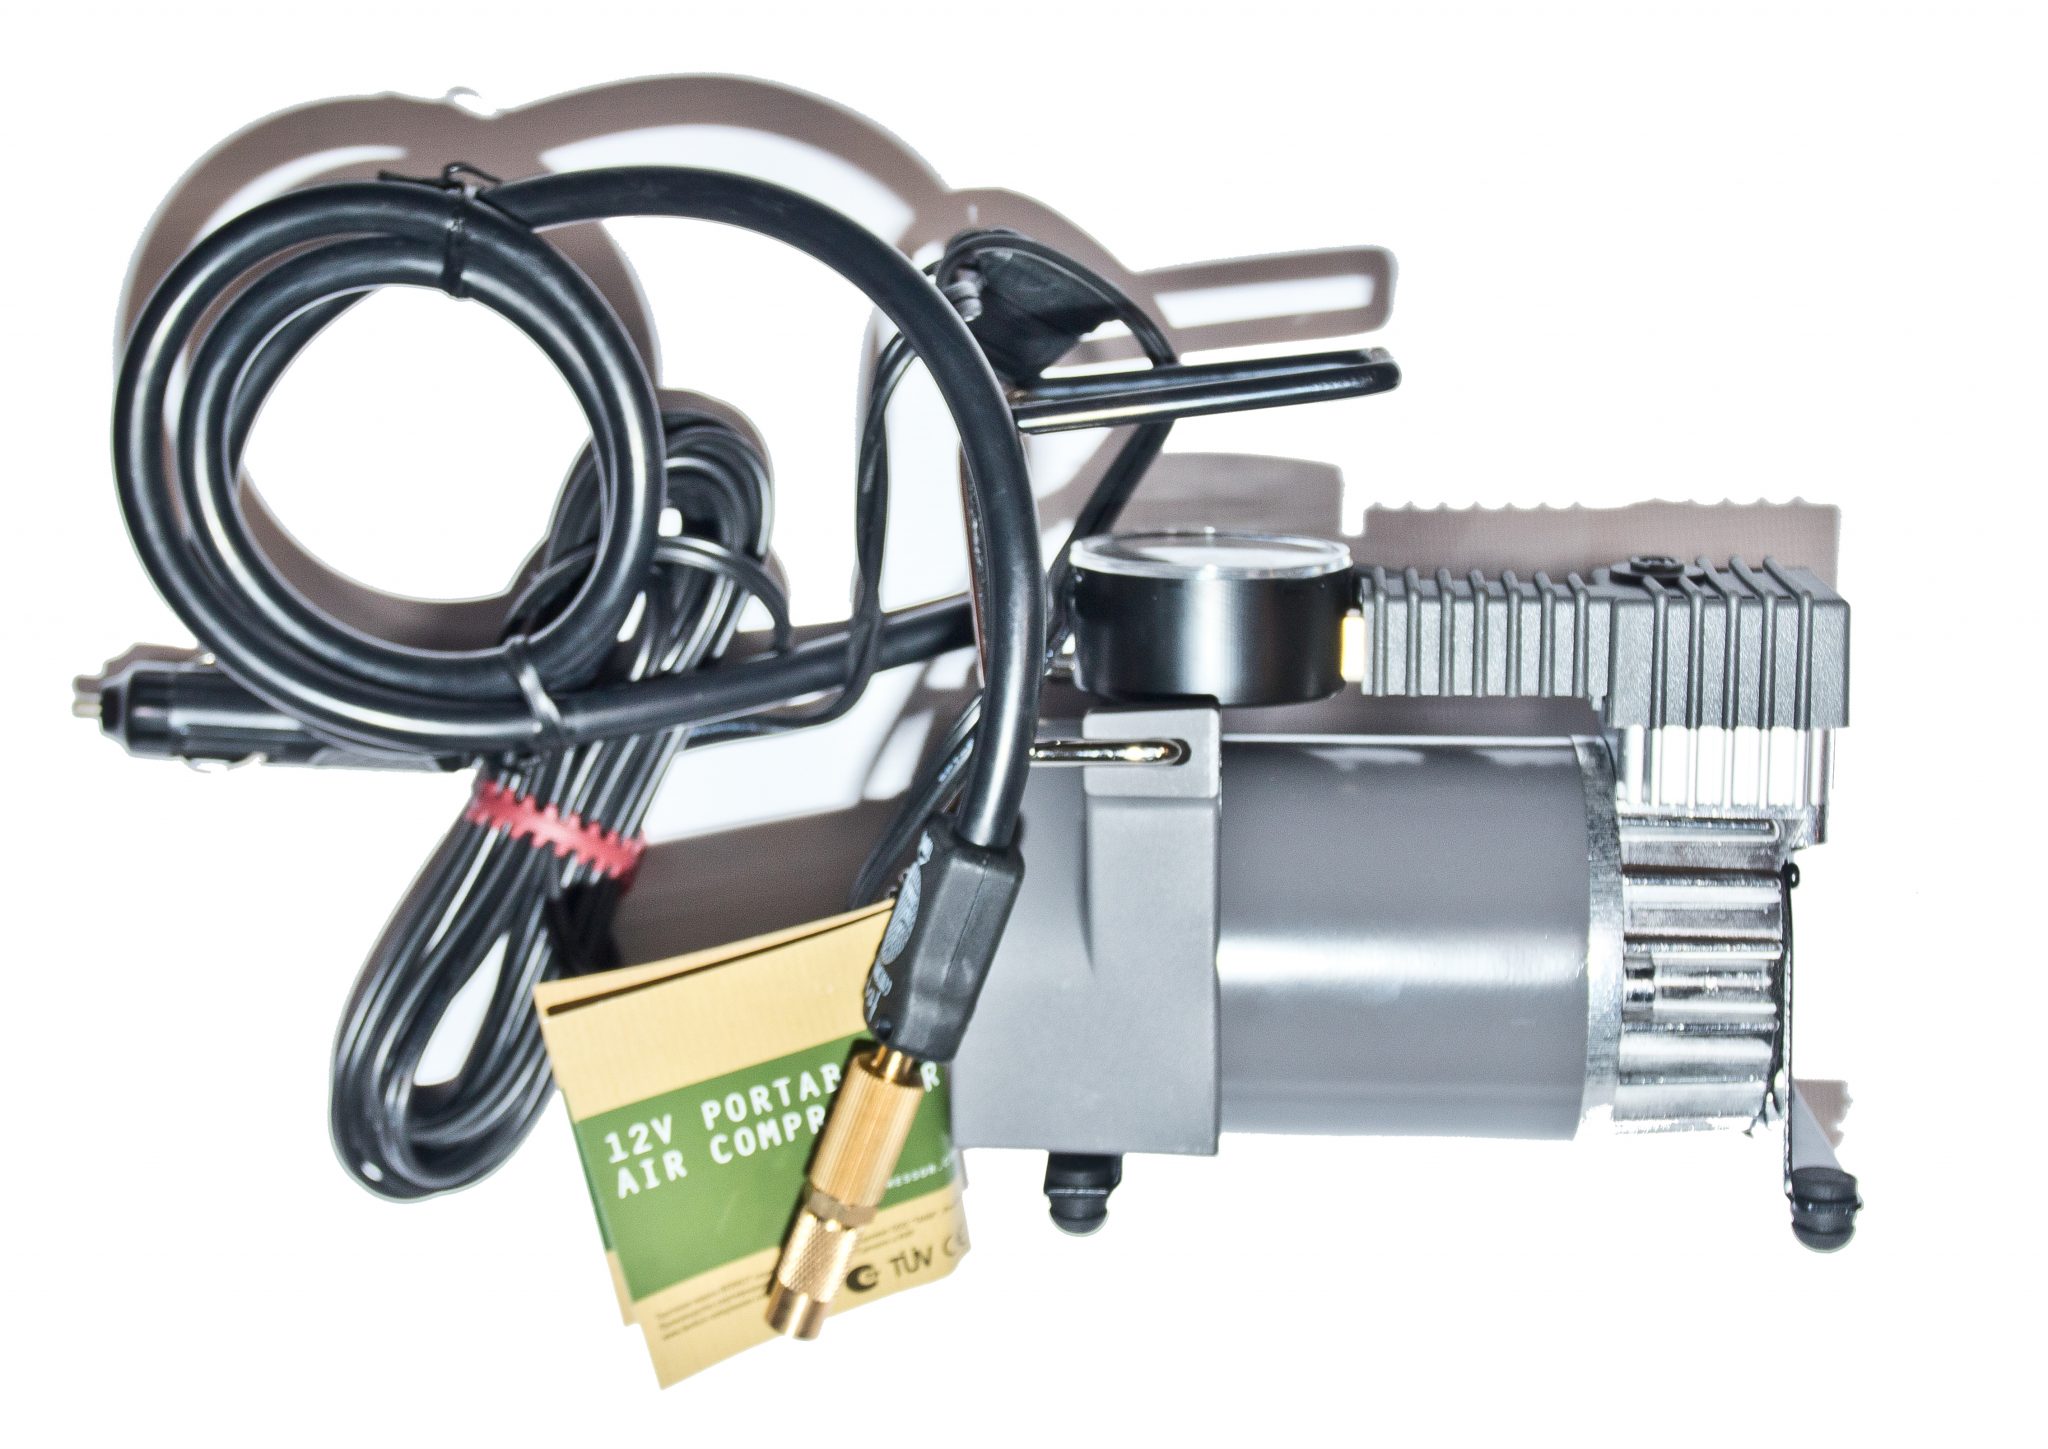 Автомобильный компрессор портативный: ТОП 10 моделей с описанием характеристик